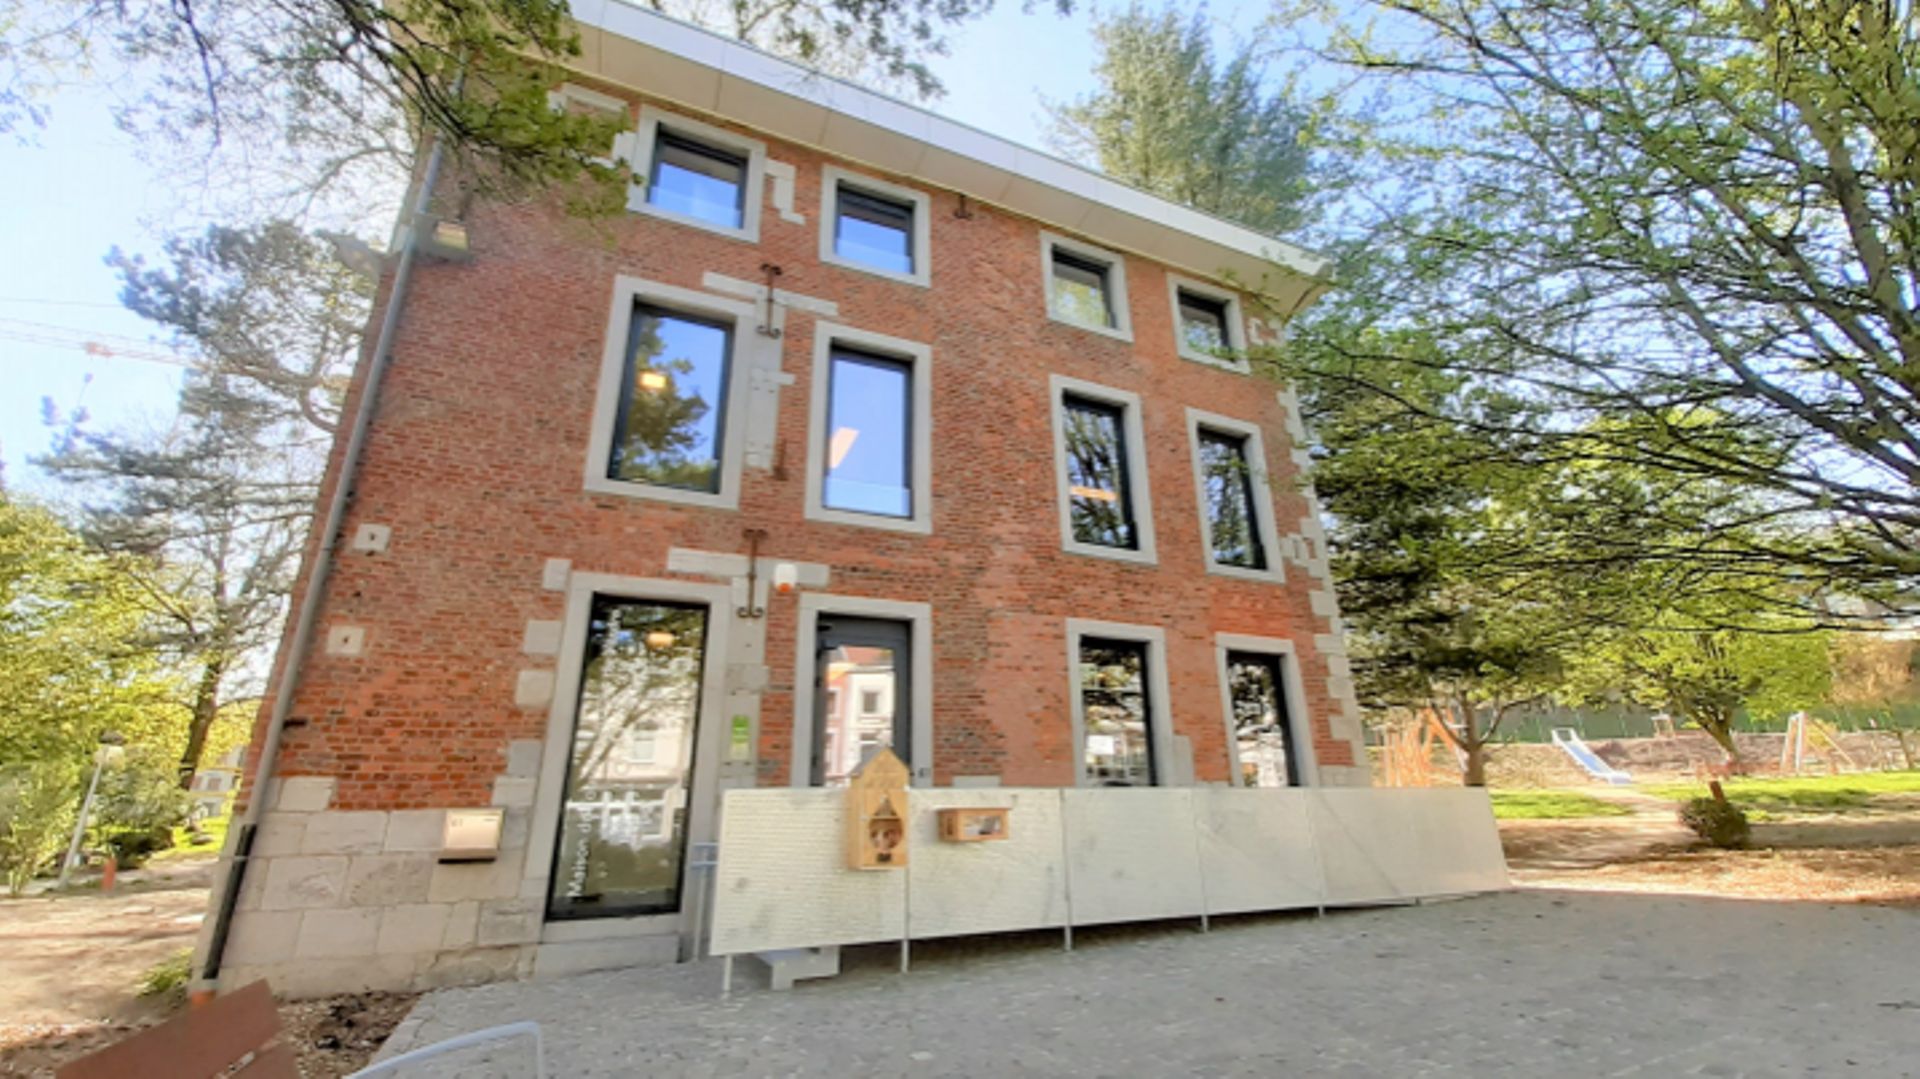 La Maison du Tourisme du Pays de Vesdre vient de regagner le centre de Verviers, rue Xhavée, dans un bâtiment entièrement remis à neuf.